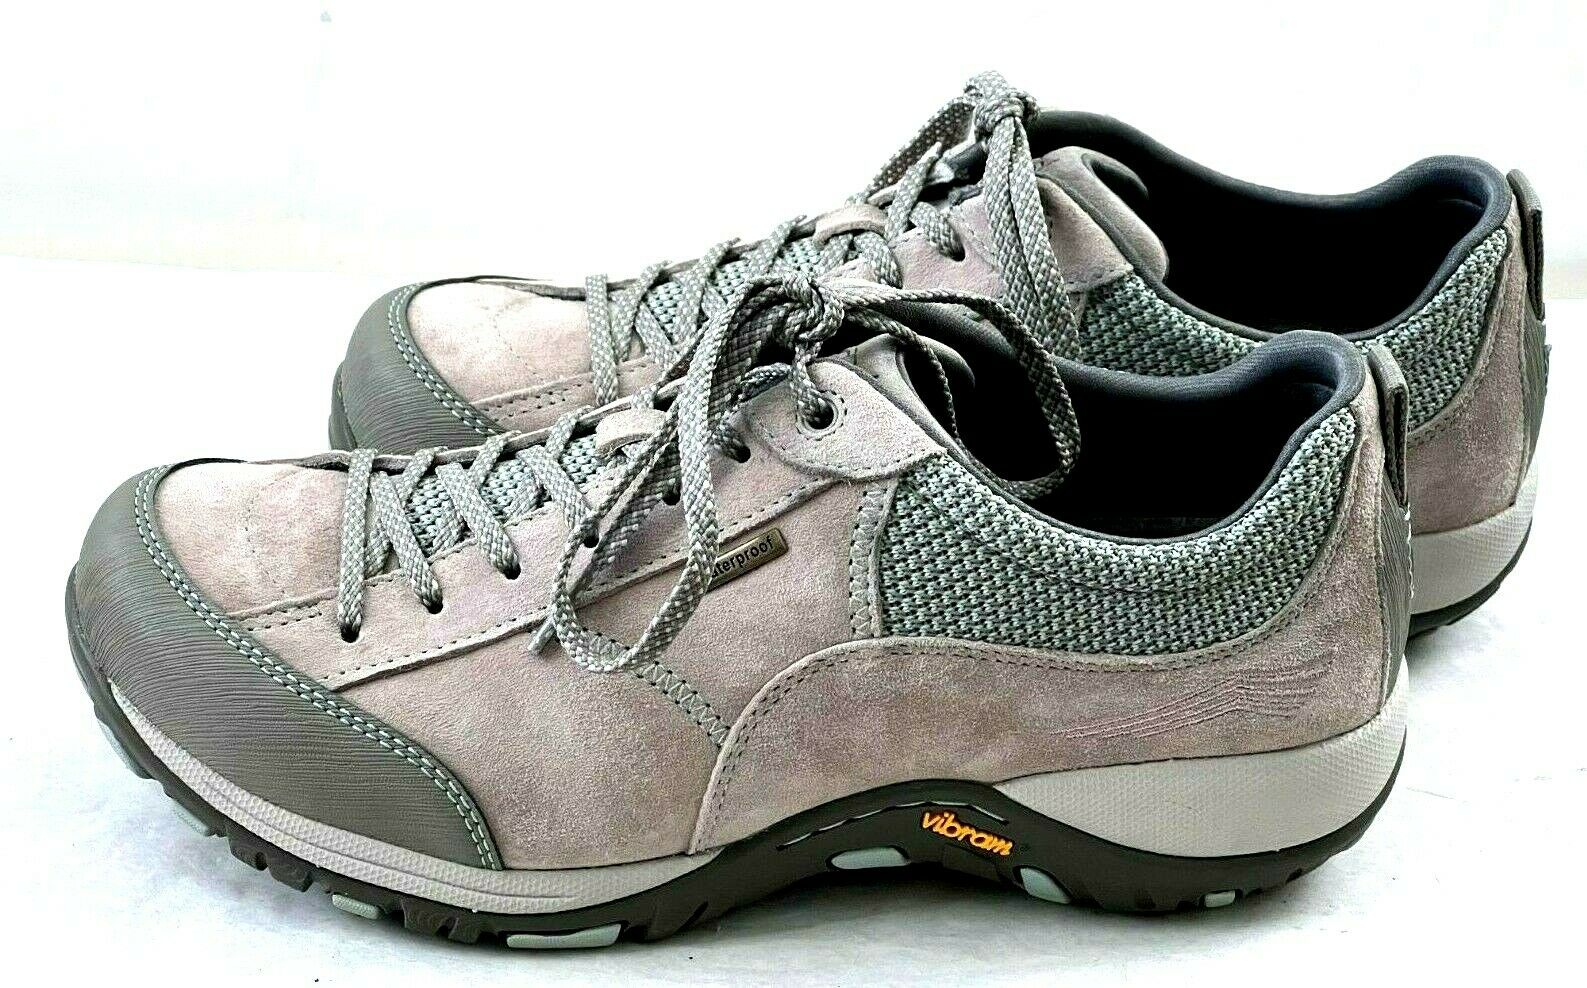 Dansko Paisley Hiking Waterproof Vibram Shoes Gray Suede Womens US 7.5-8 EUR 38